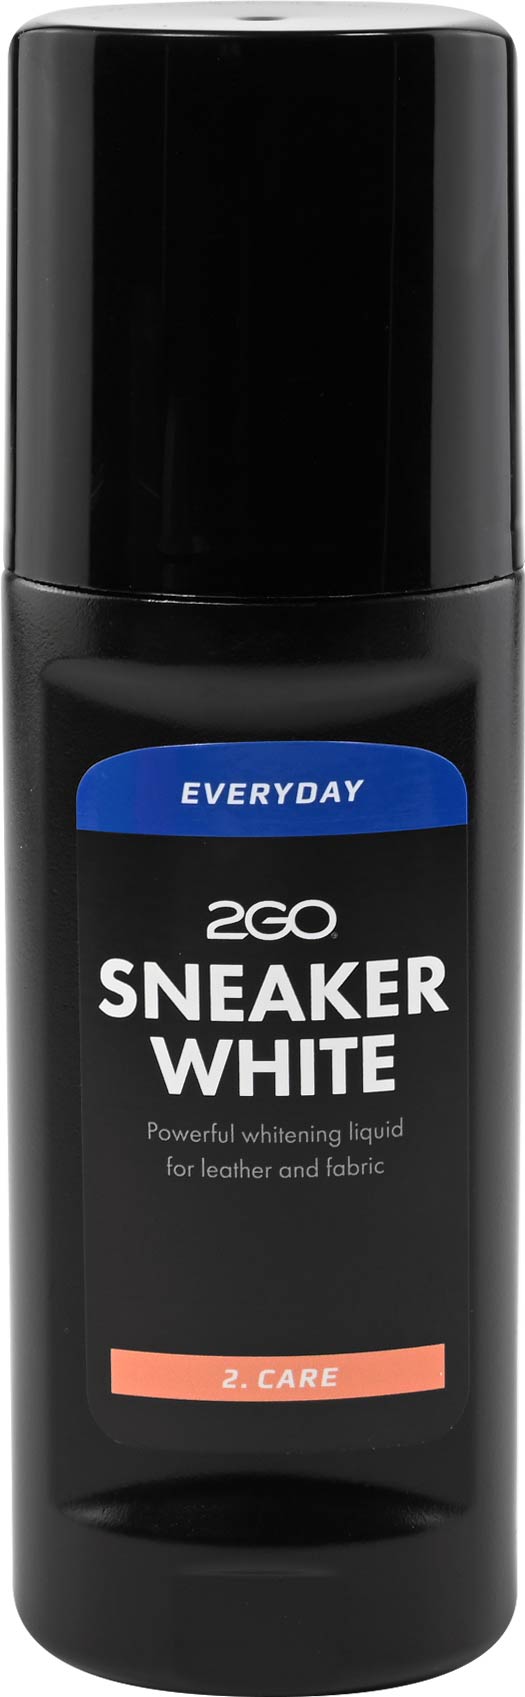 2GO Sneaker White